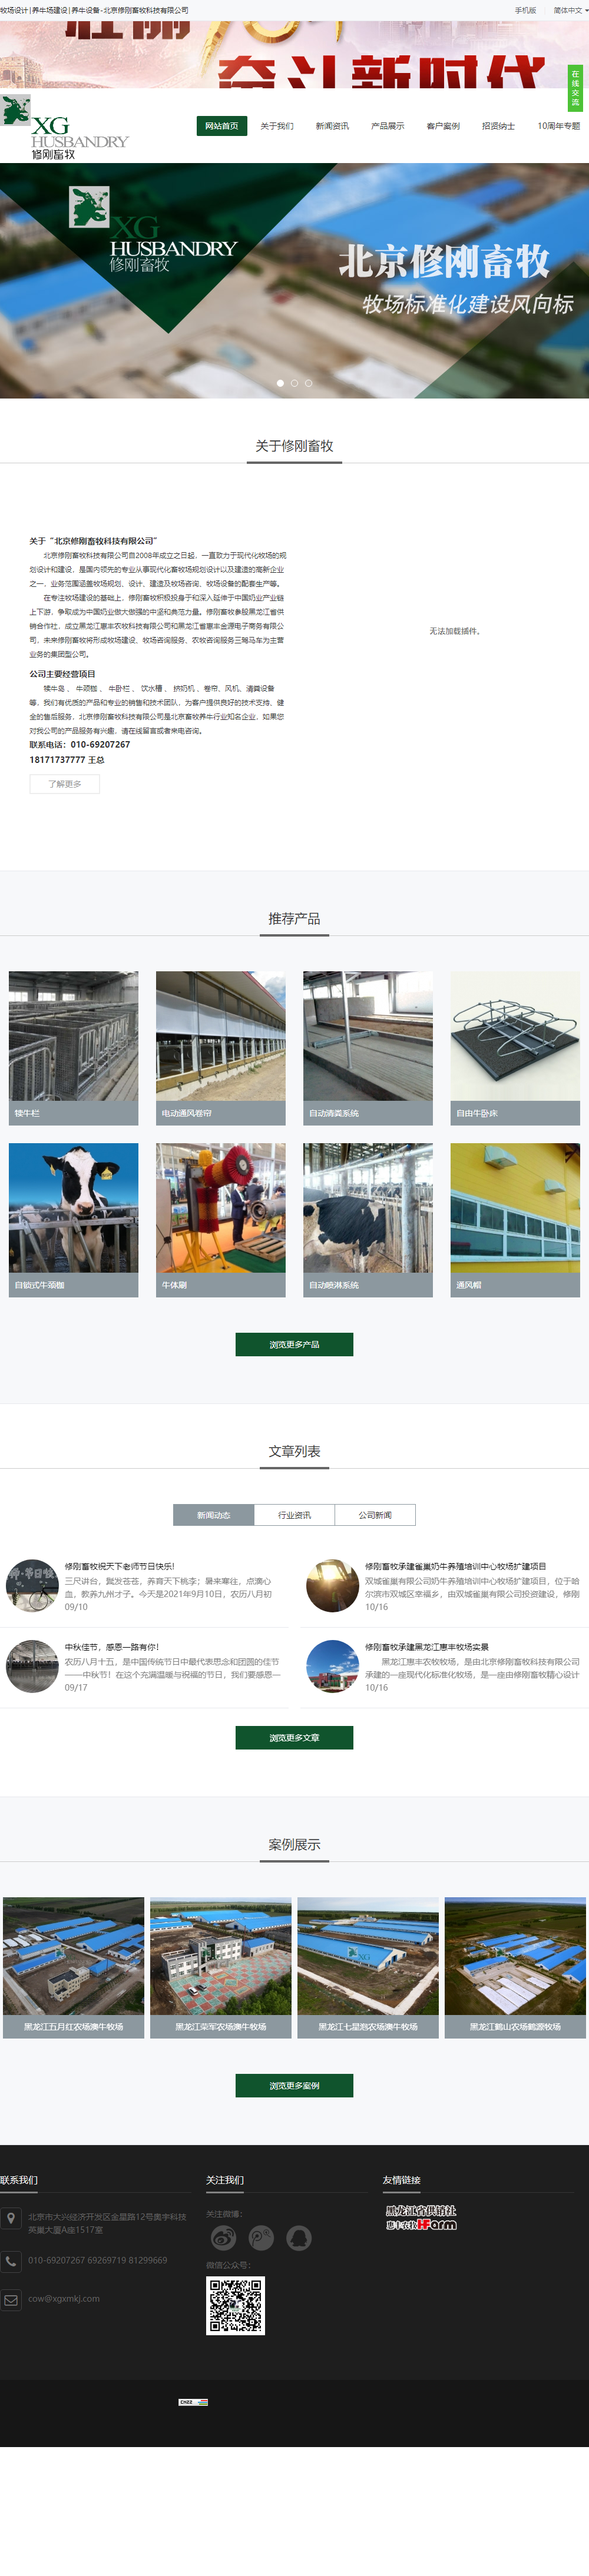 北京修刚畜牧科技有限公司网站案例